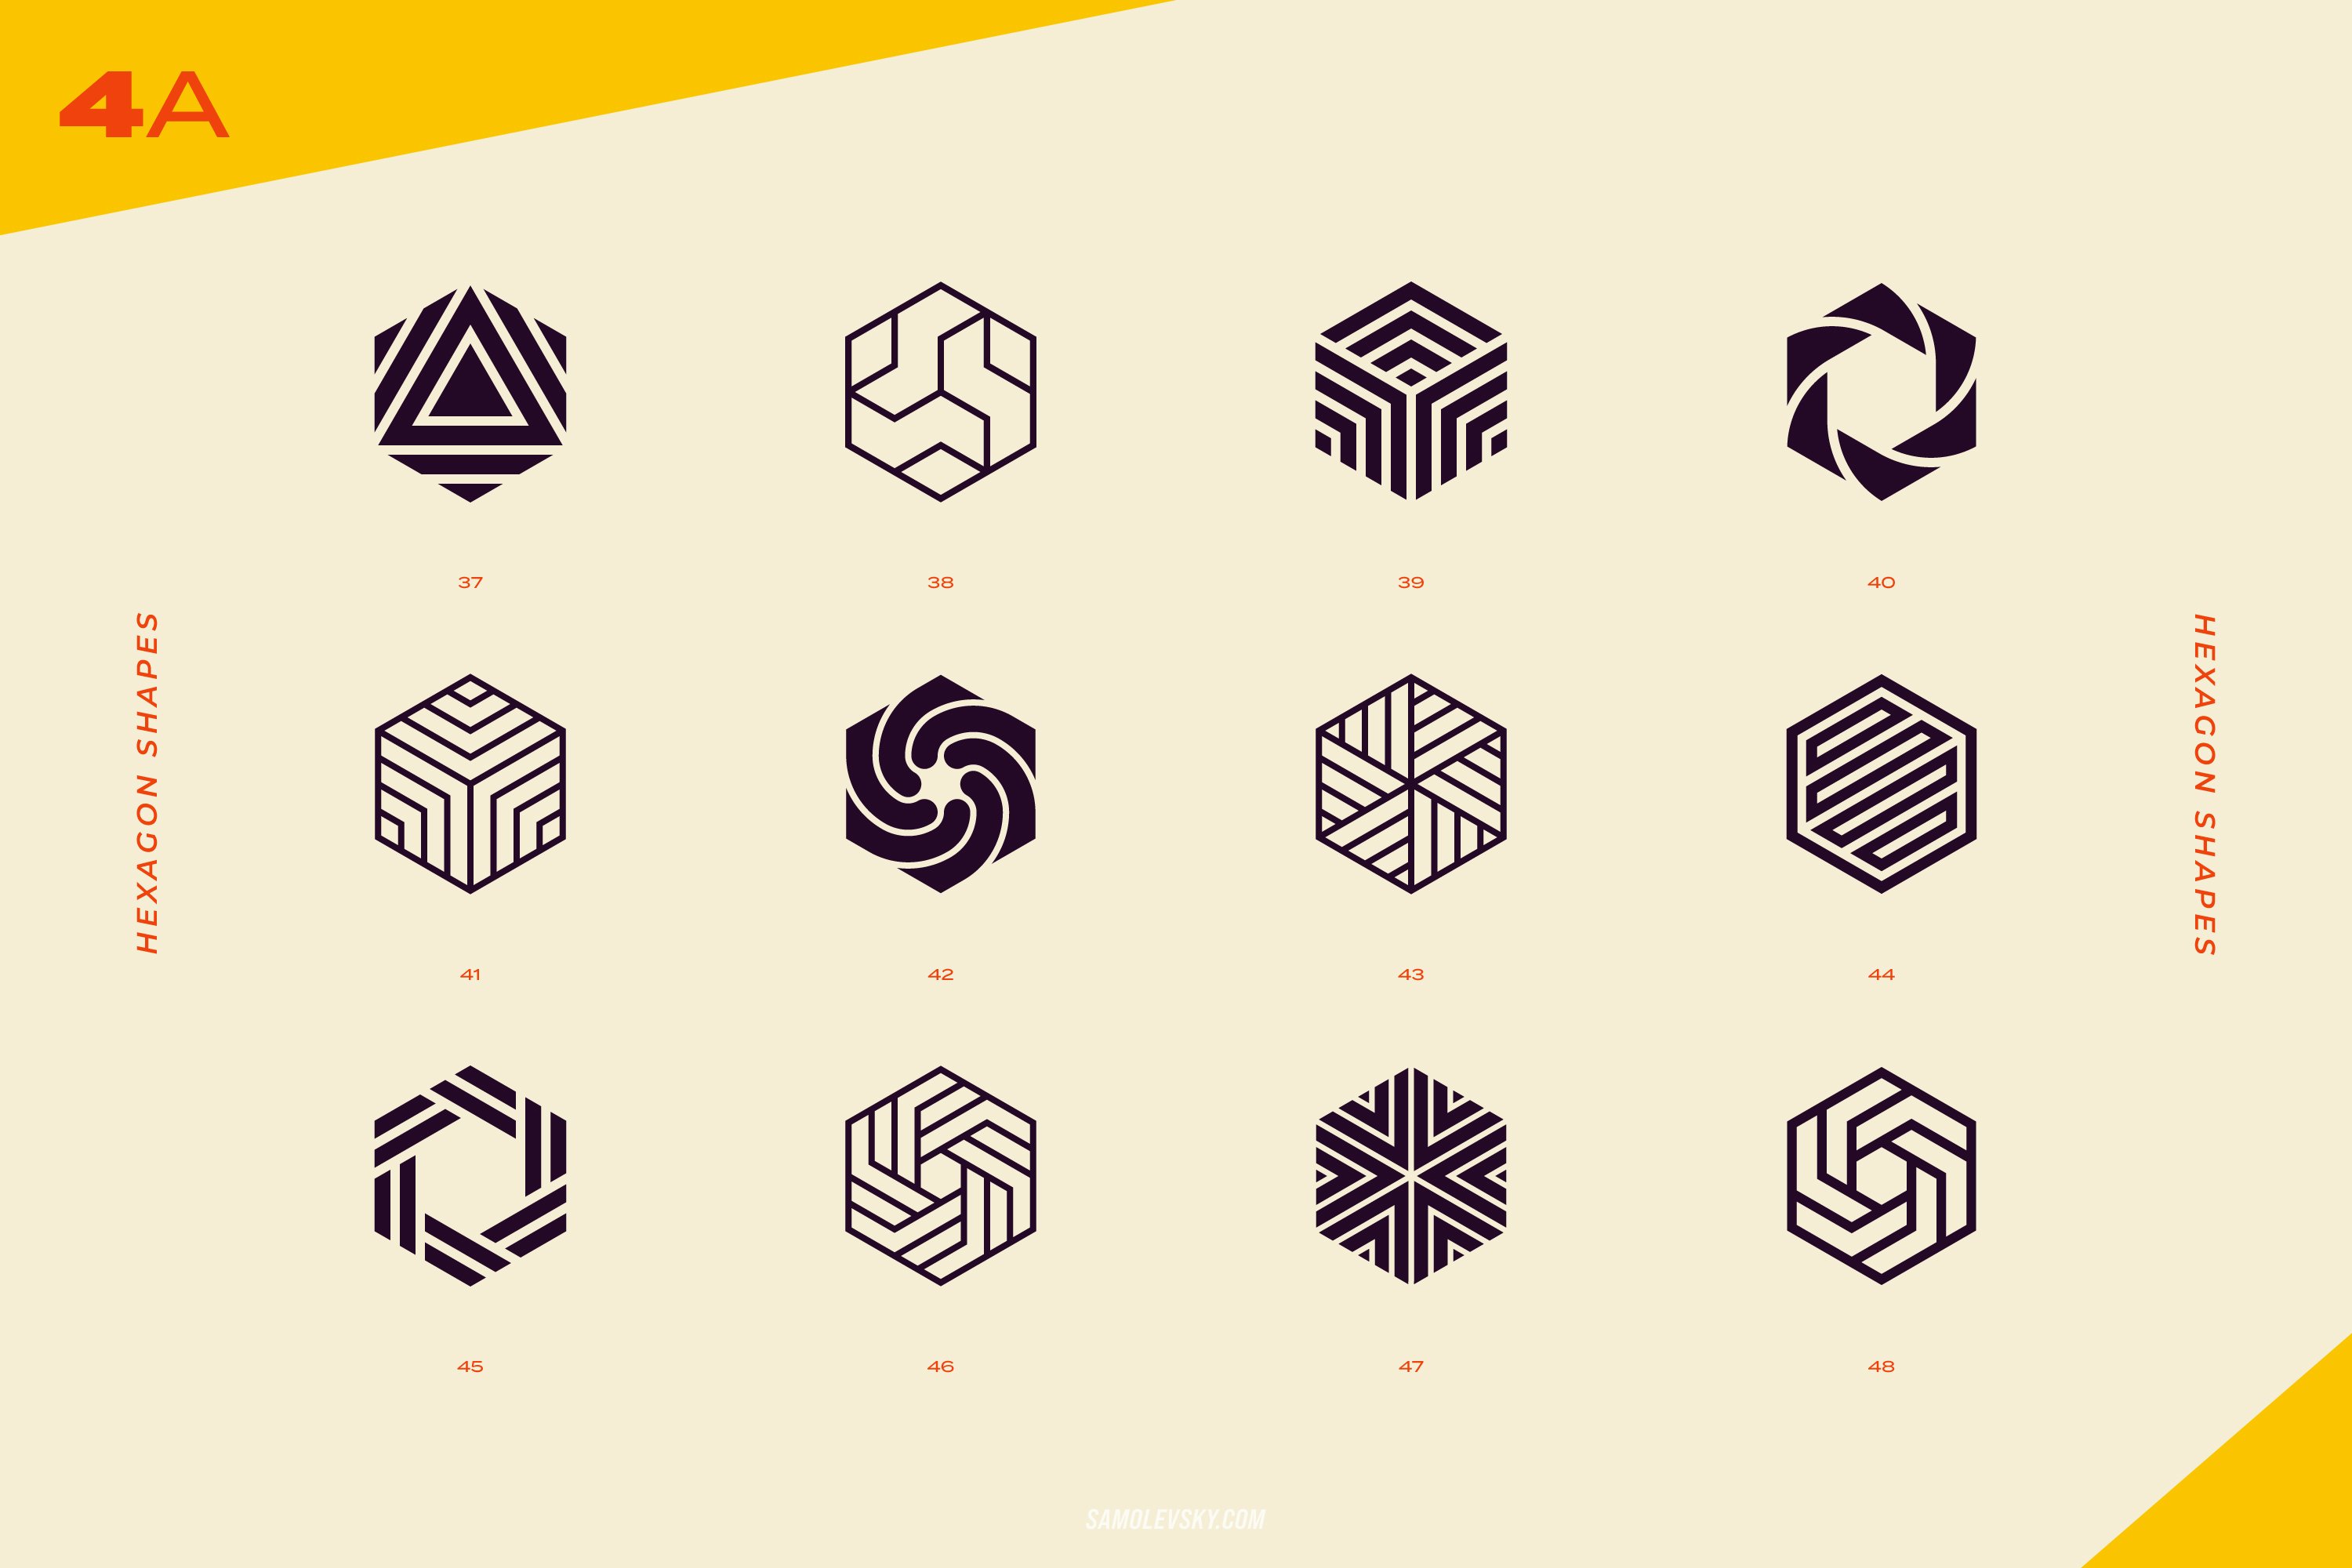 96 个抽象几何形状标志和图形元素矢量素材-96 Logo marks & geometric shapes